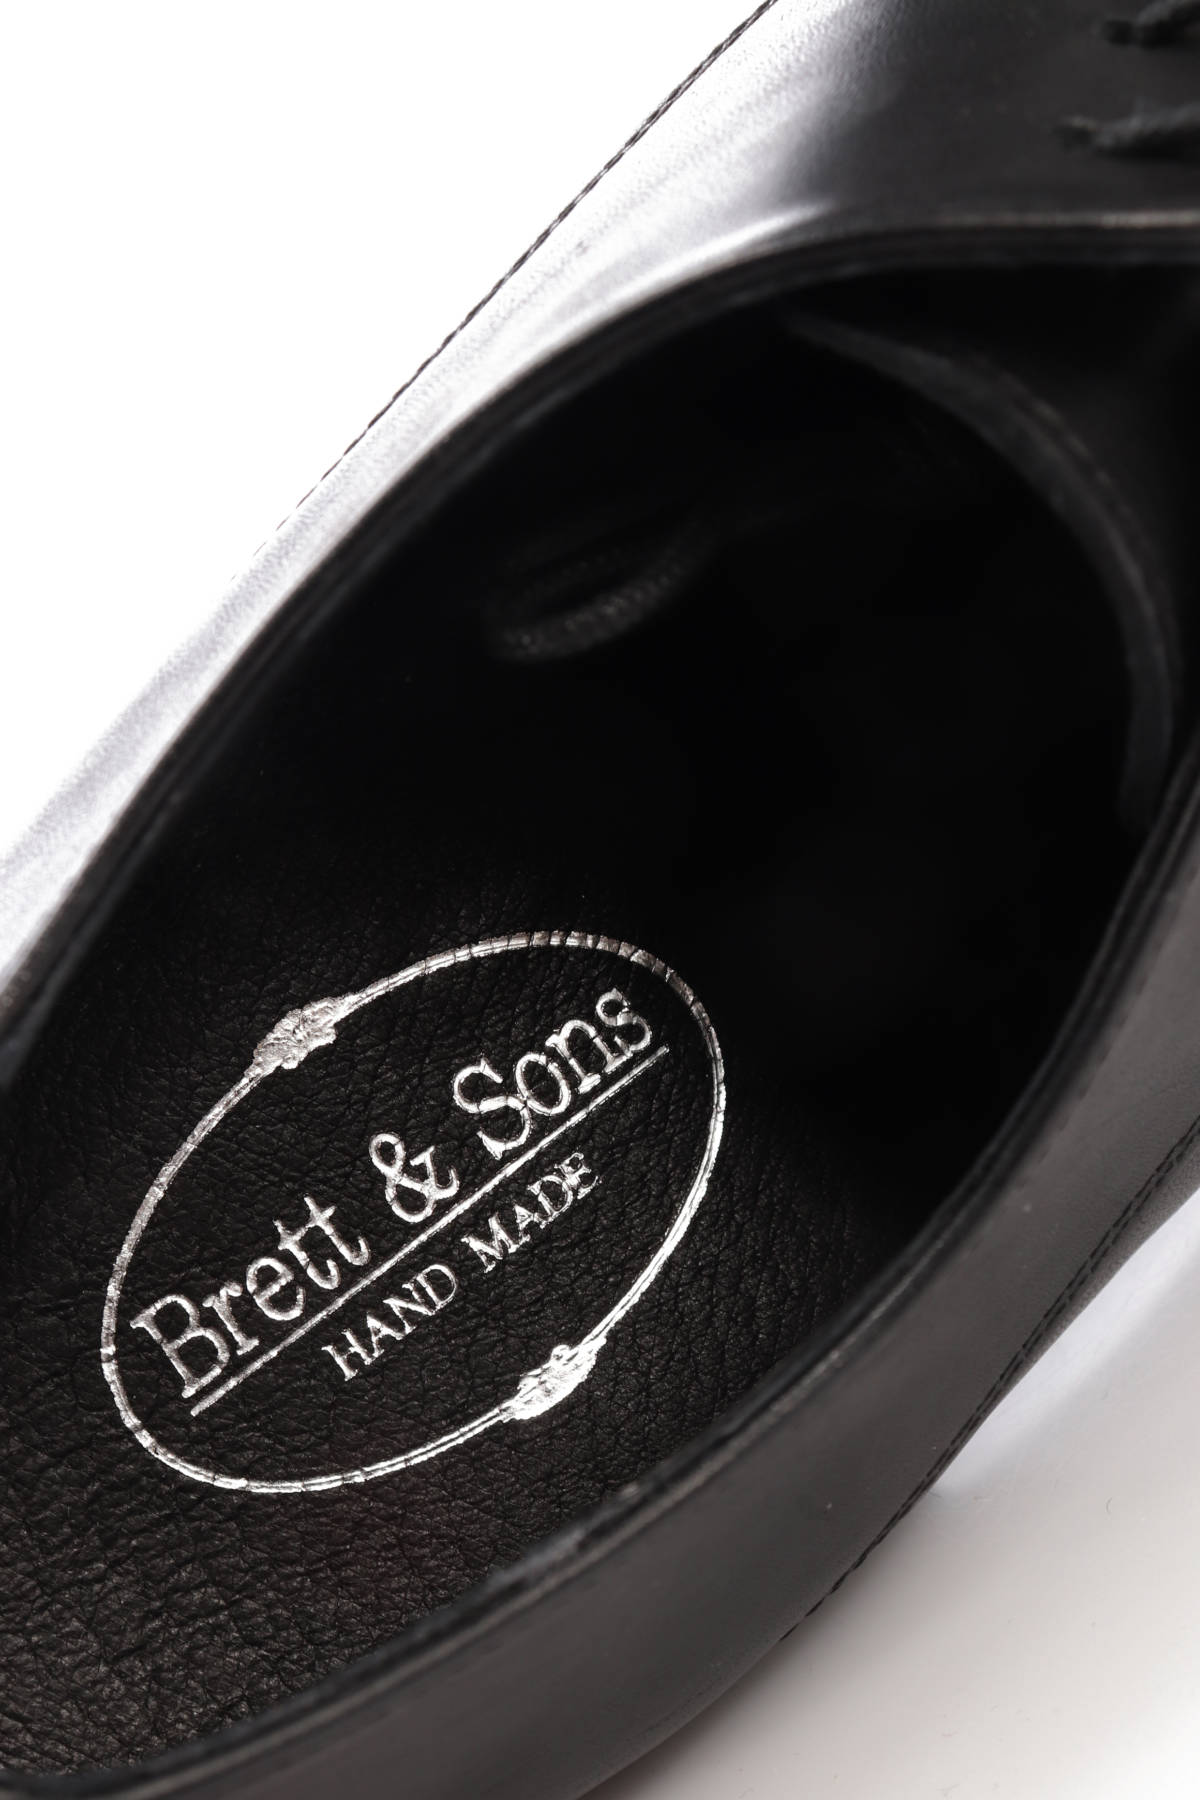 Официални обувки BRETT&SONS4